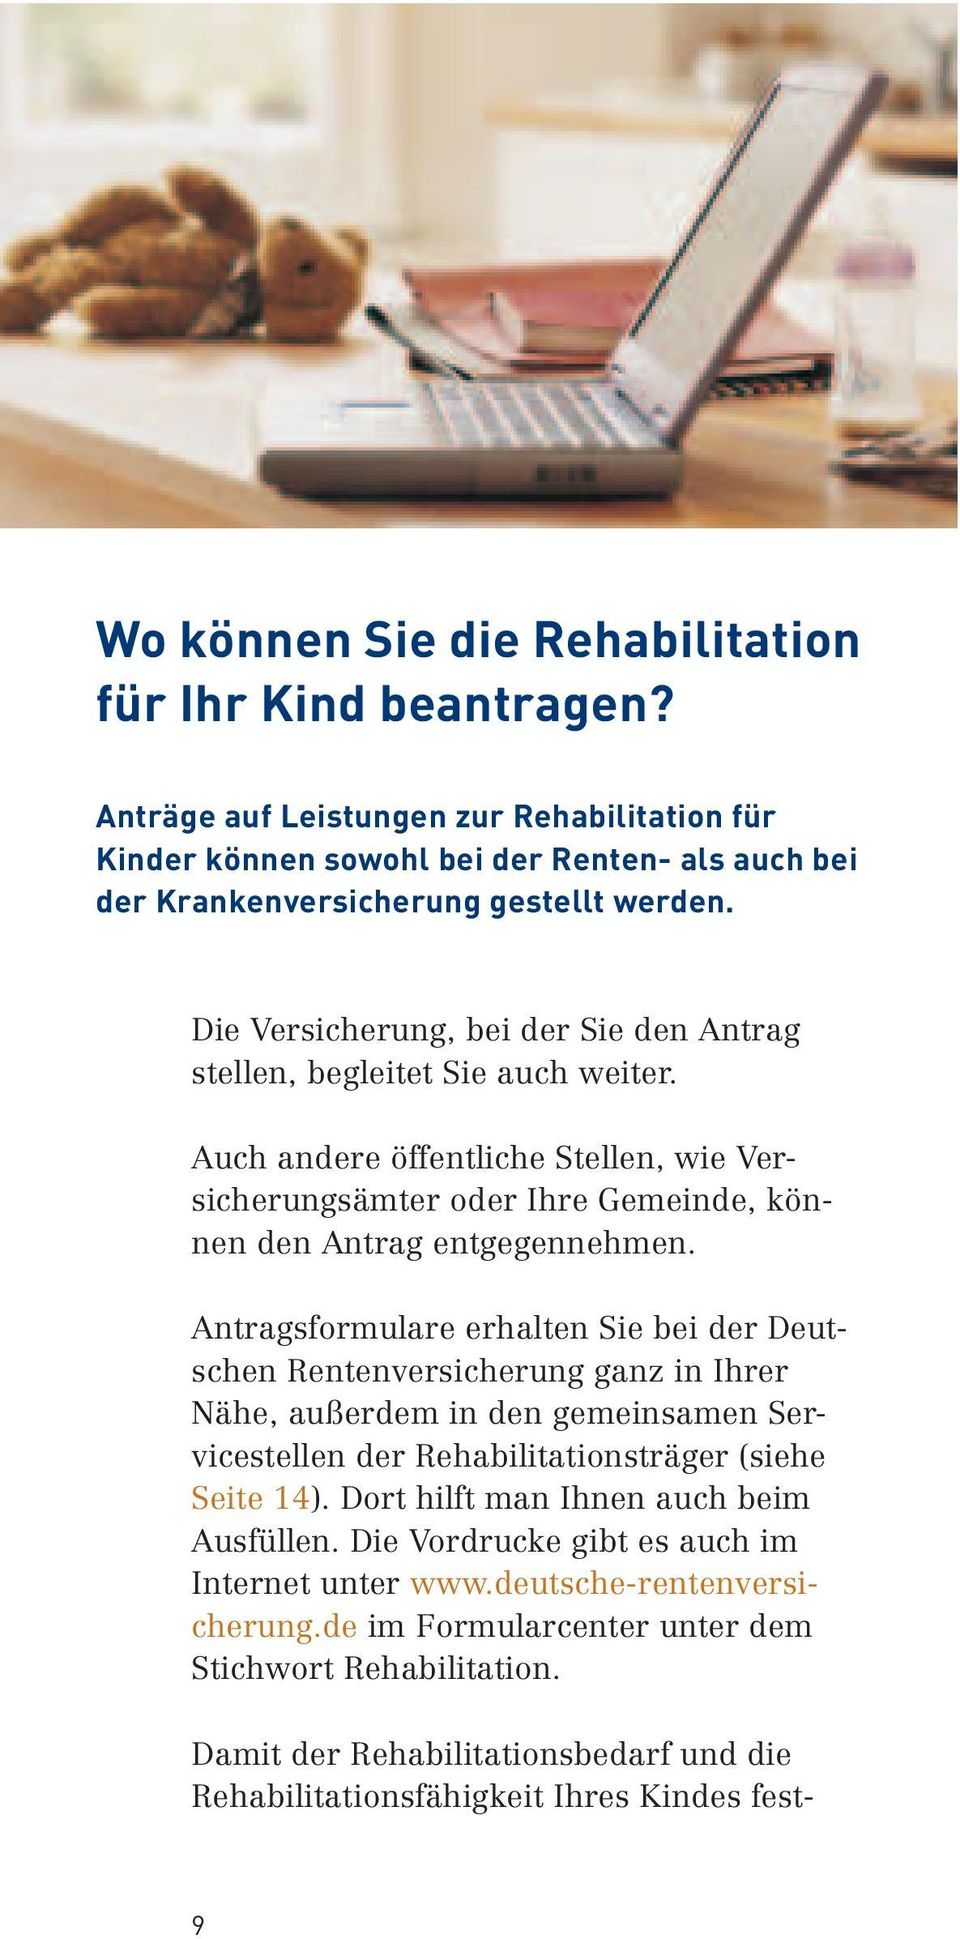 Antragsformulare erhalten Sie bei der Deutschen Rentenversicherung ganz in Ihrer Nähe, außerdem in den gemeinsamen Servicestellen der Rehabilitationsträger (siehe Seite 14).